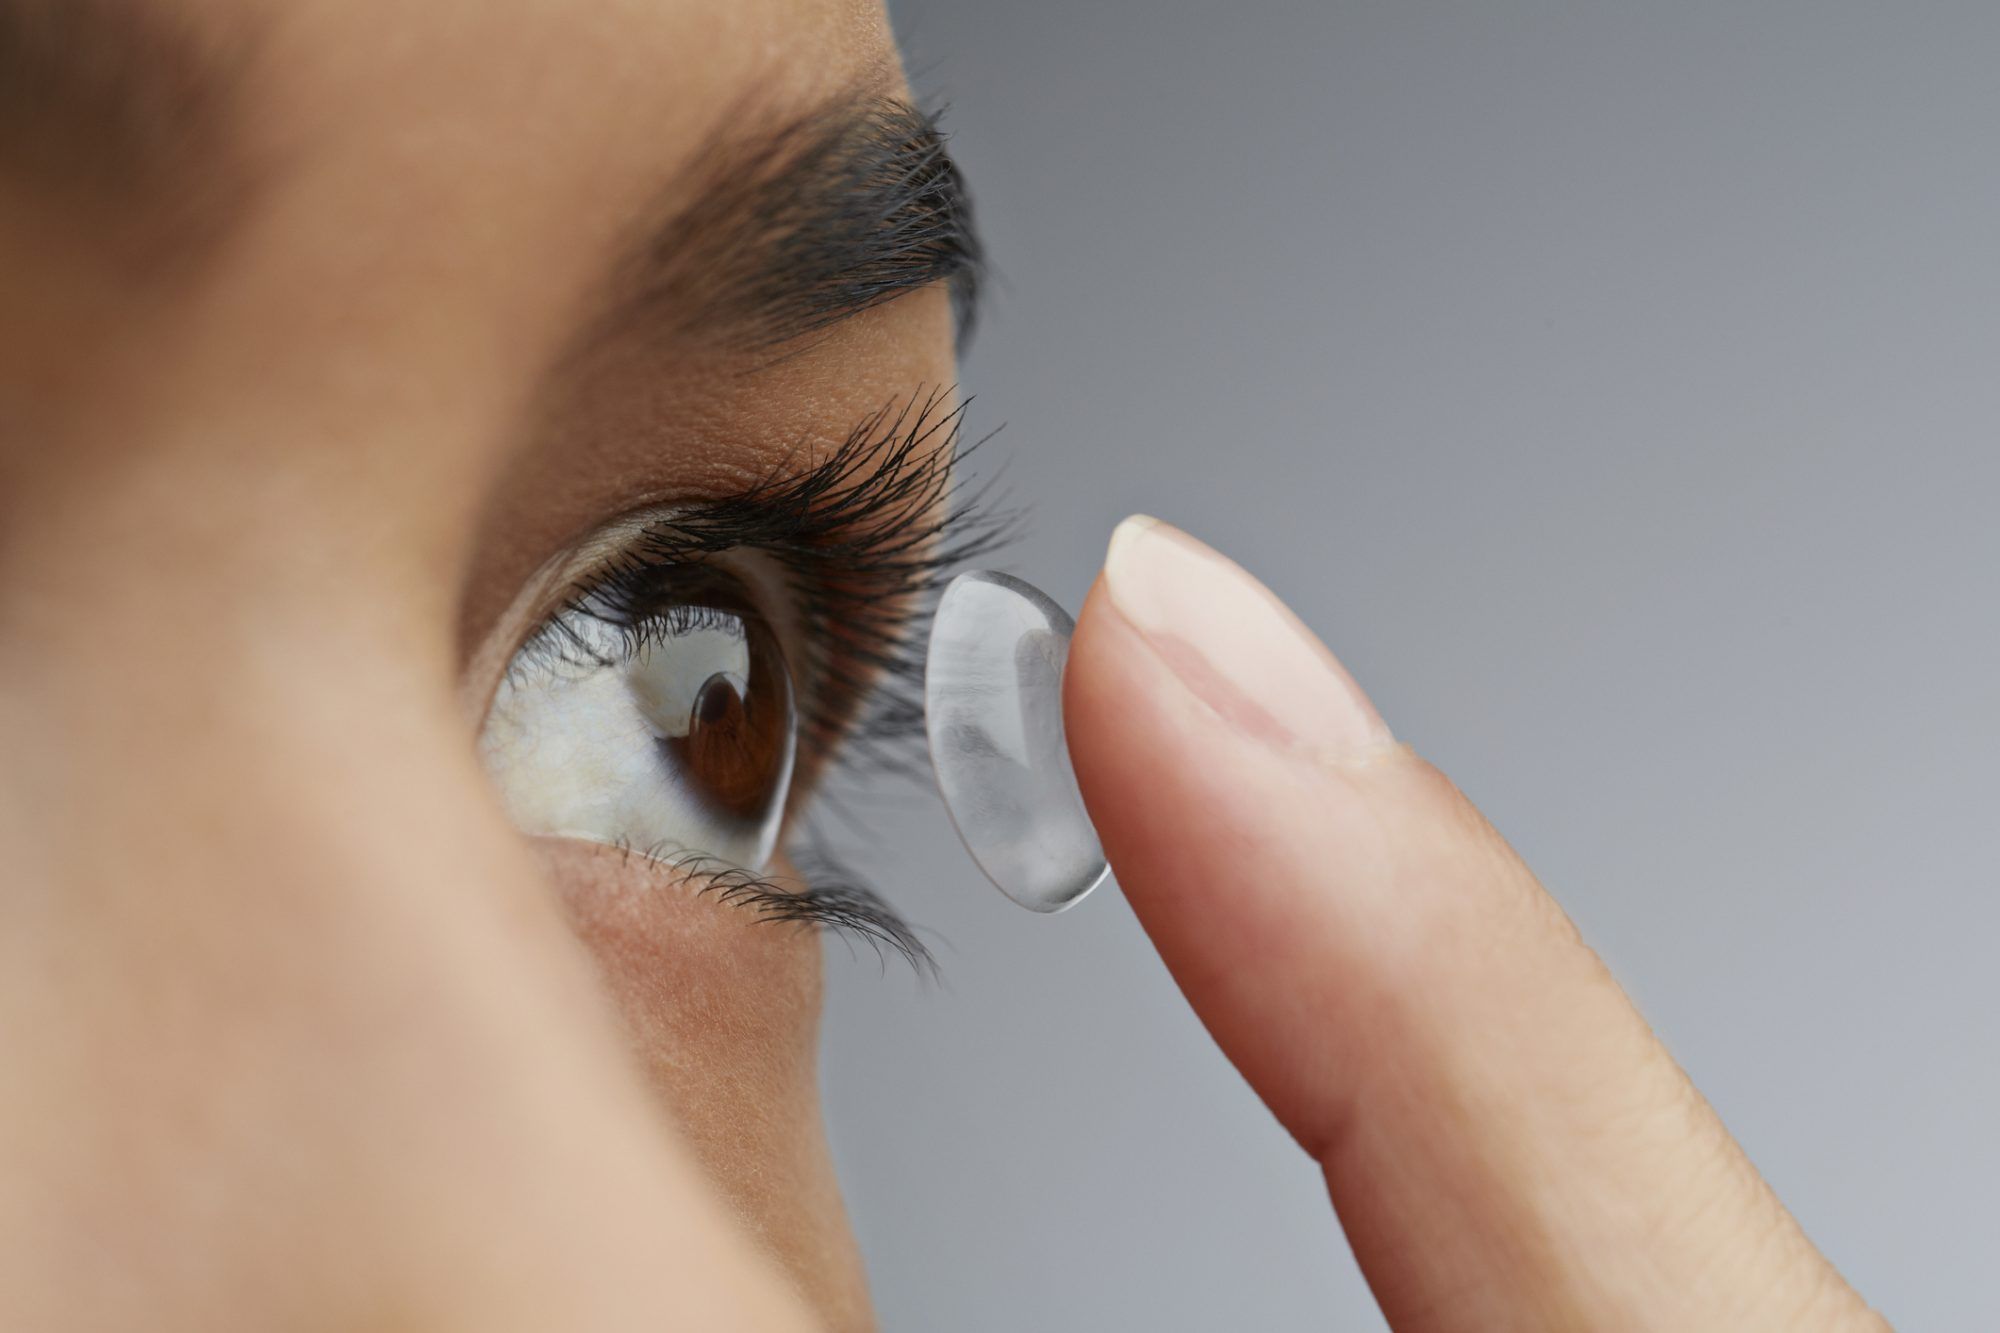 Eksperter siger, at du skal stoppe med at bruge kontaktlinser under Coronavirus-pandemien